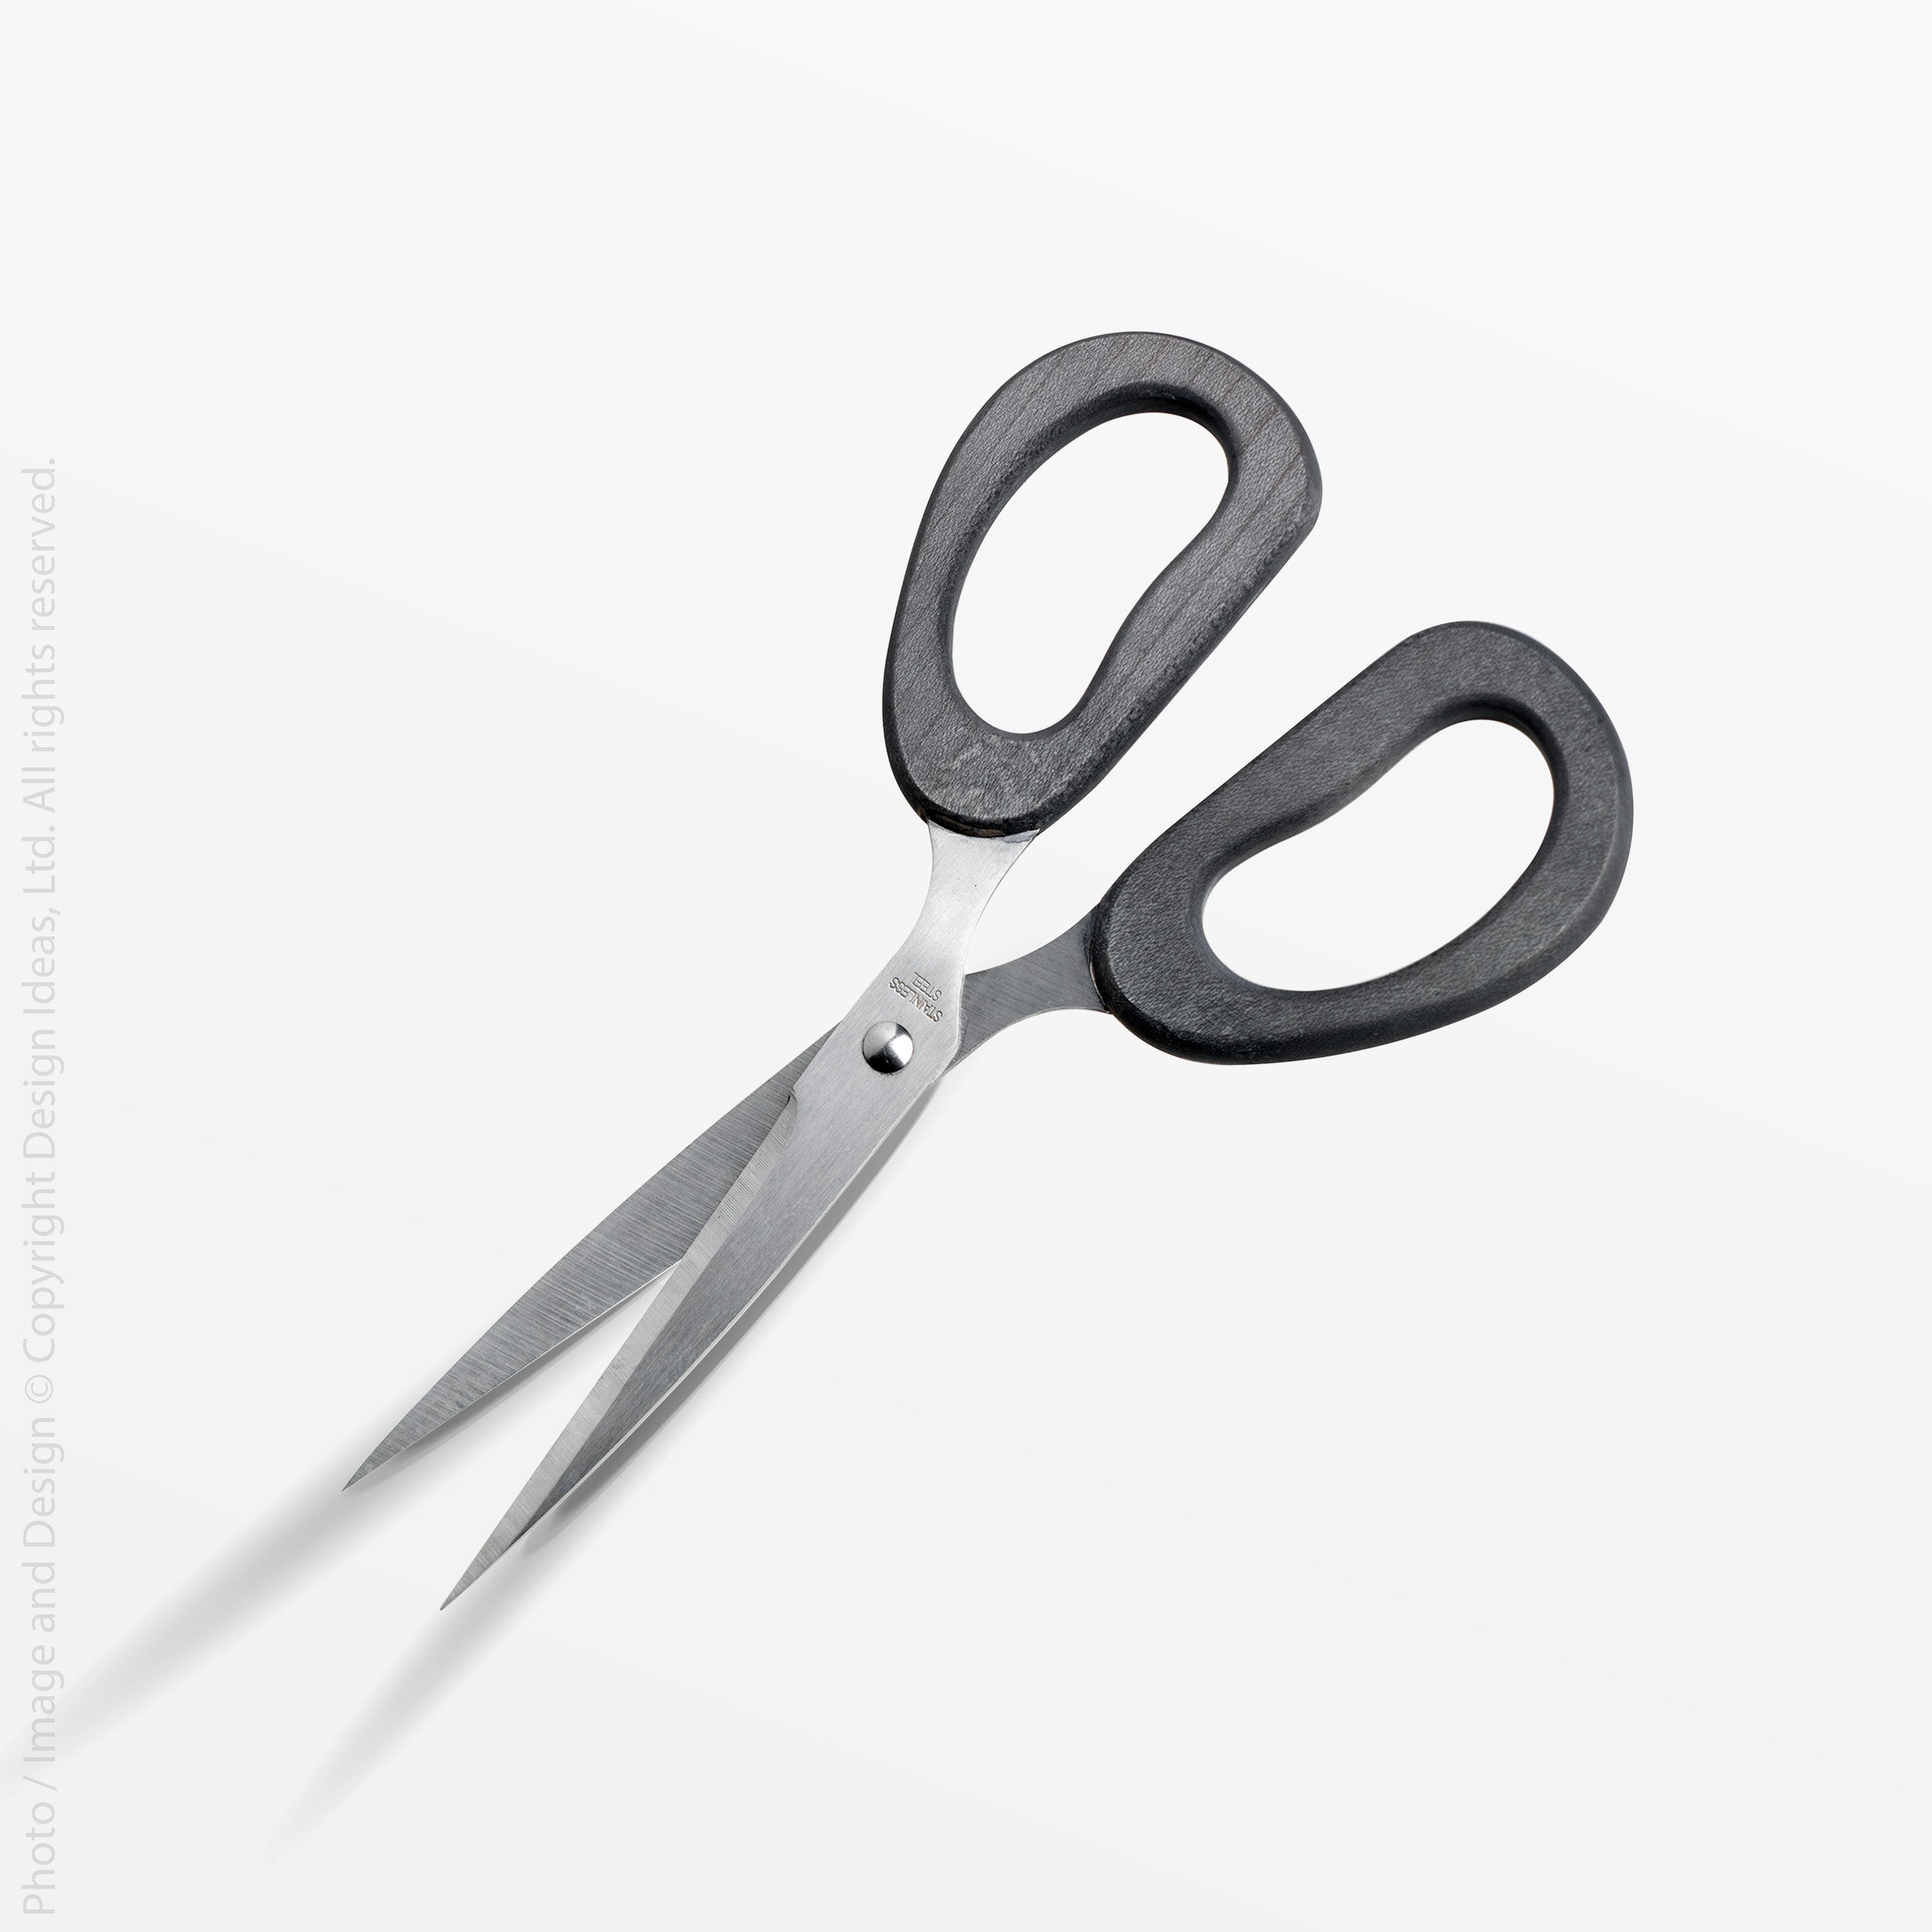 Cokala Scissors | STAGandMANOR.com